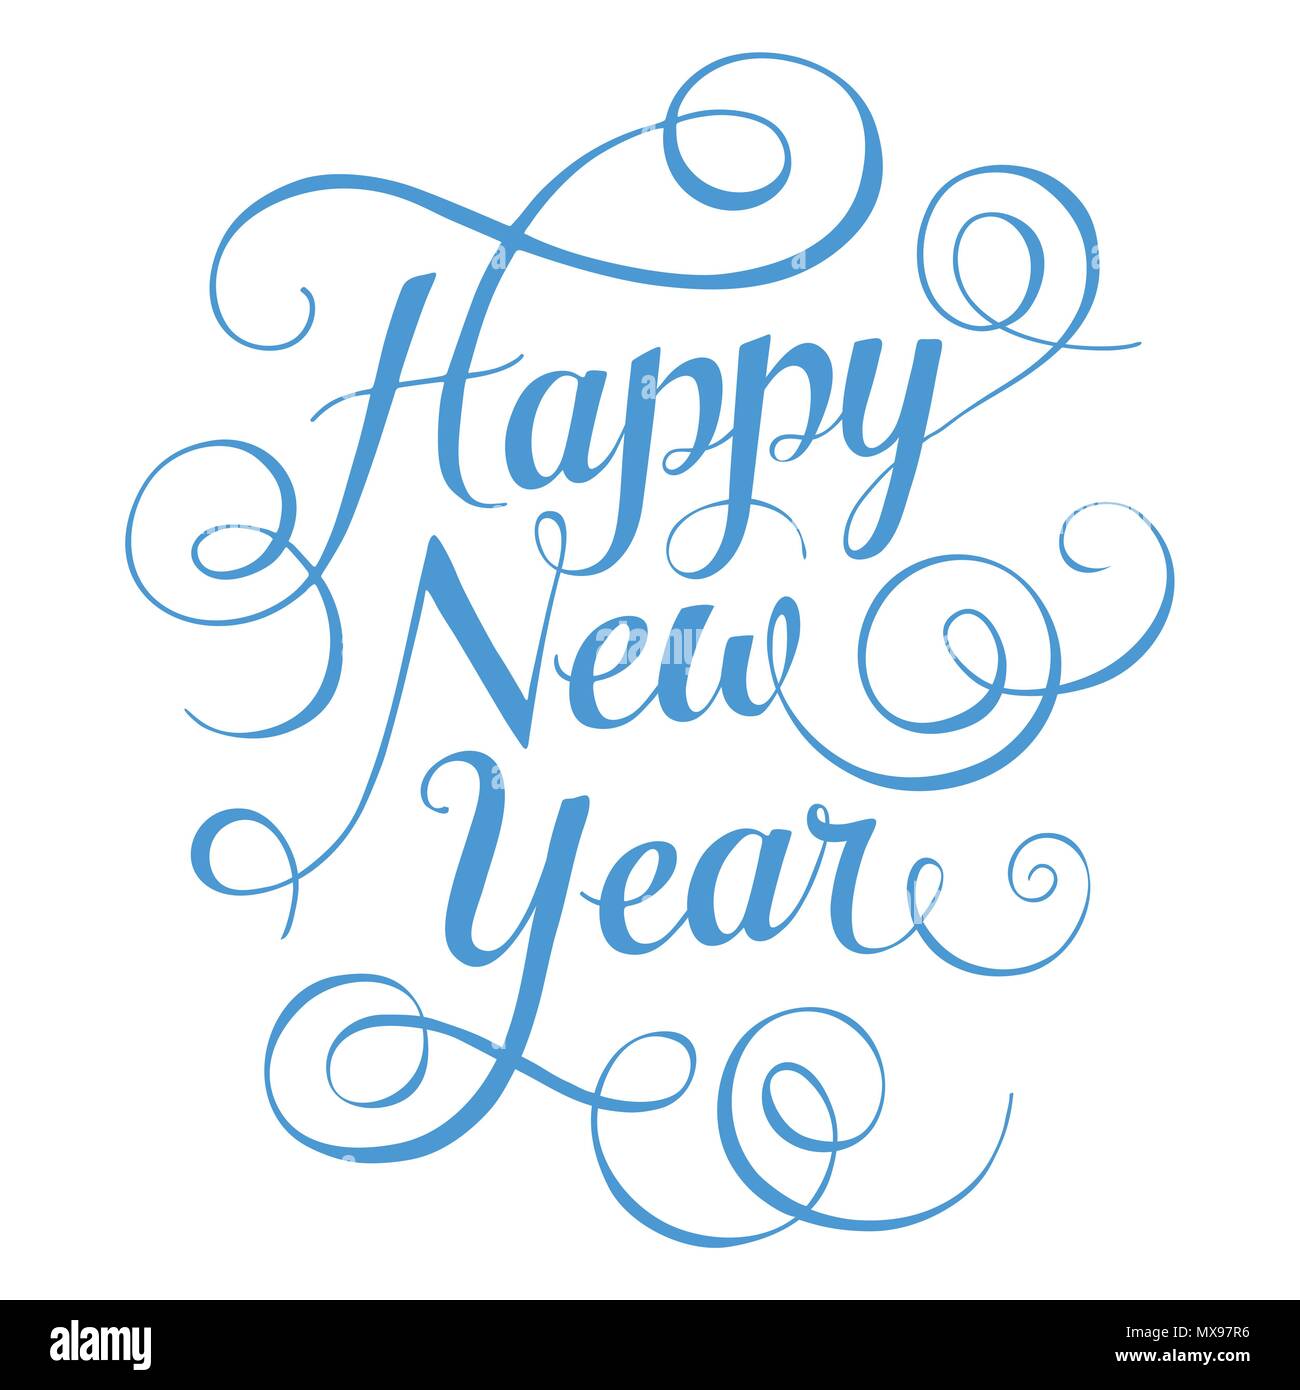 Thiết kế chữ Happy New Year màu xanh rực rỡ chắc chắn sẽ thu hút sự chú ý của bạn. Với nền trắng tinh khôi, những chữ viết đầy năng lượng sẽ mang lại niềm tin vào một năm mới đầy khởi sắc và thành công.